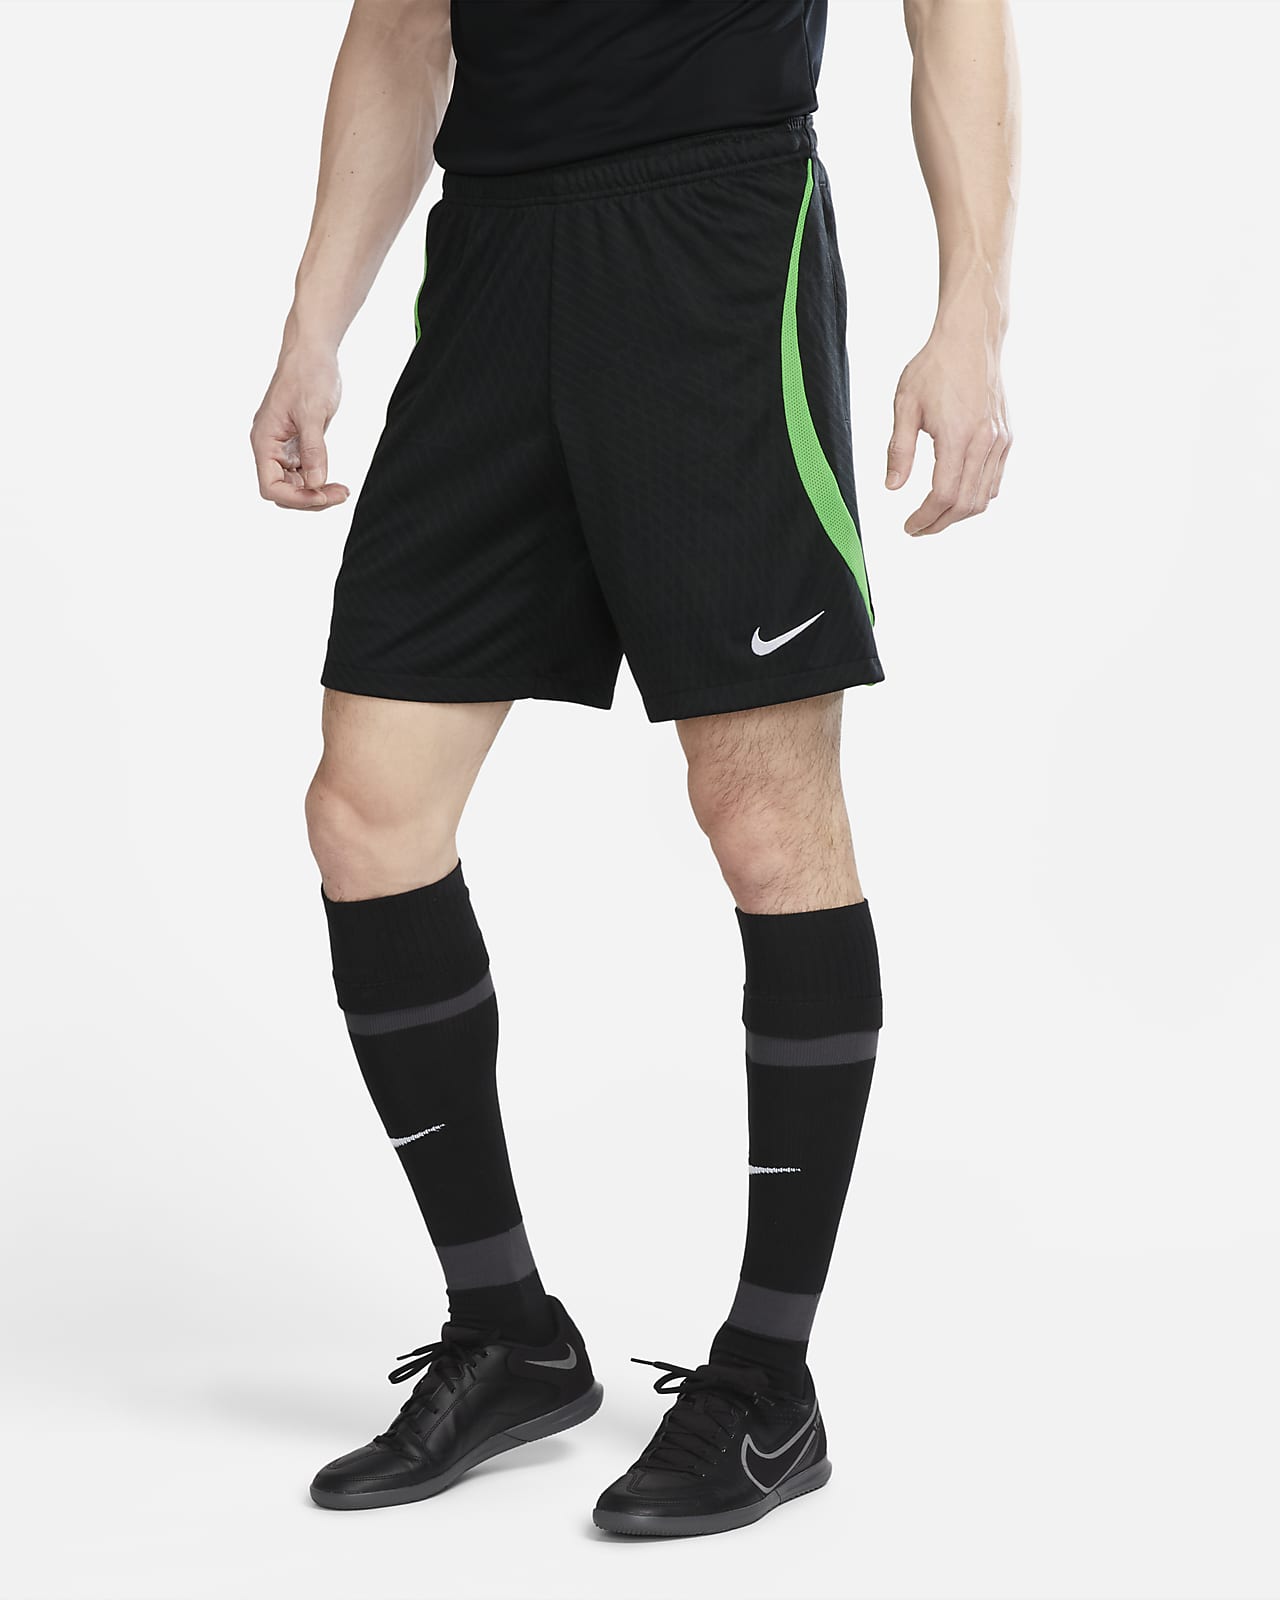 Liverpool FC Strike 男款 Nike Dri-FIT 針織足球短褲